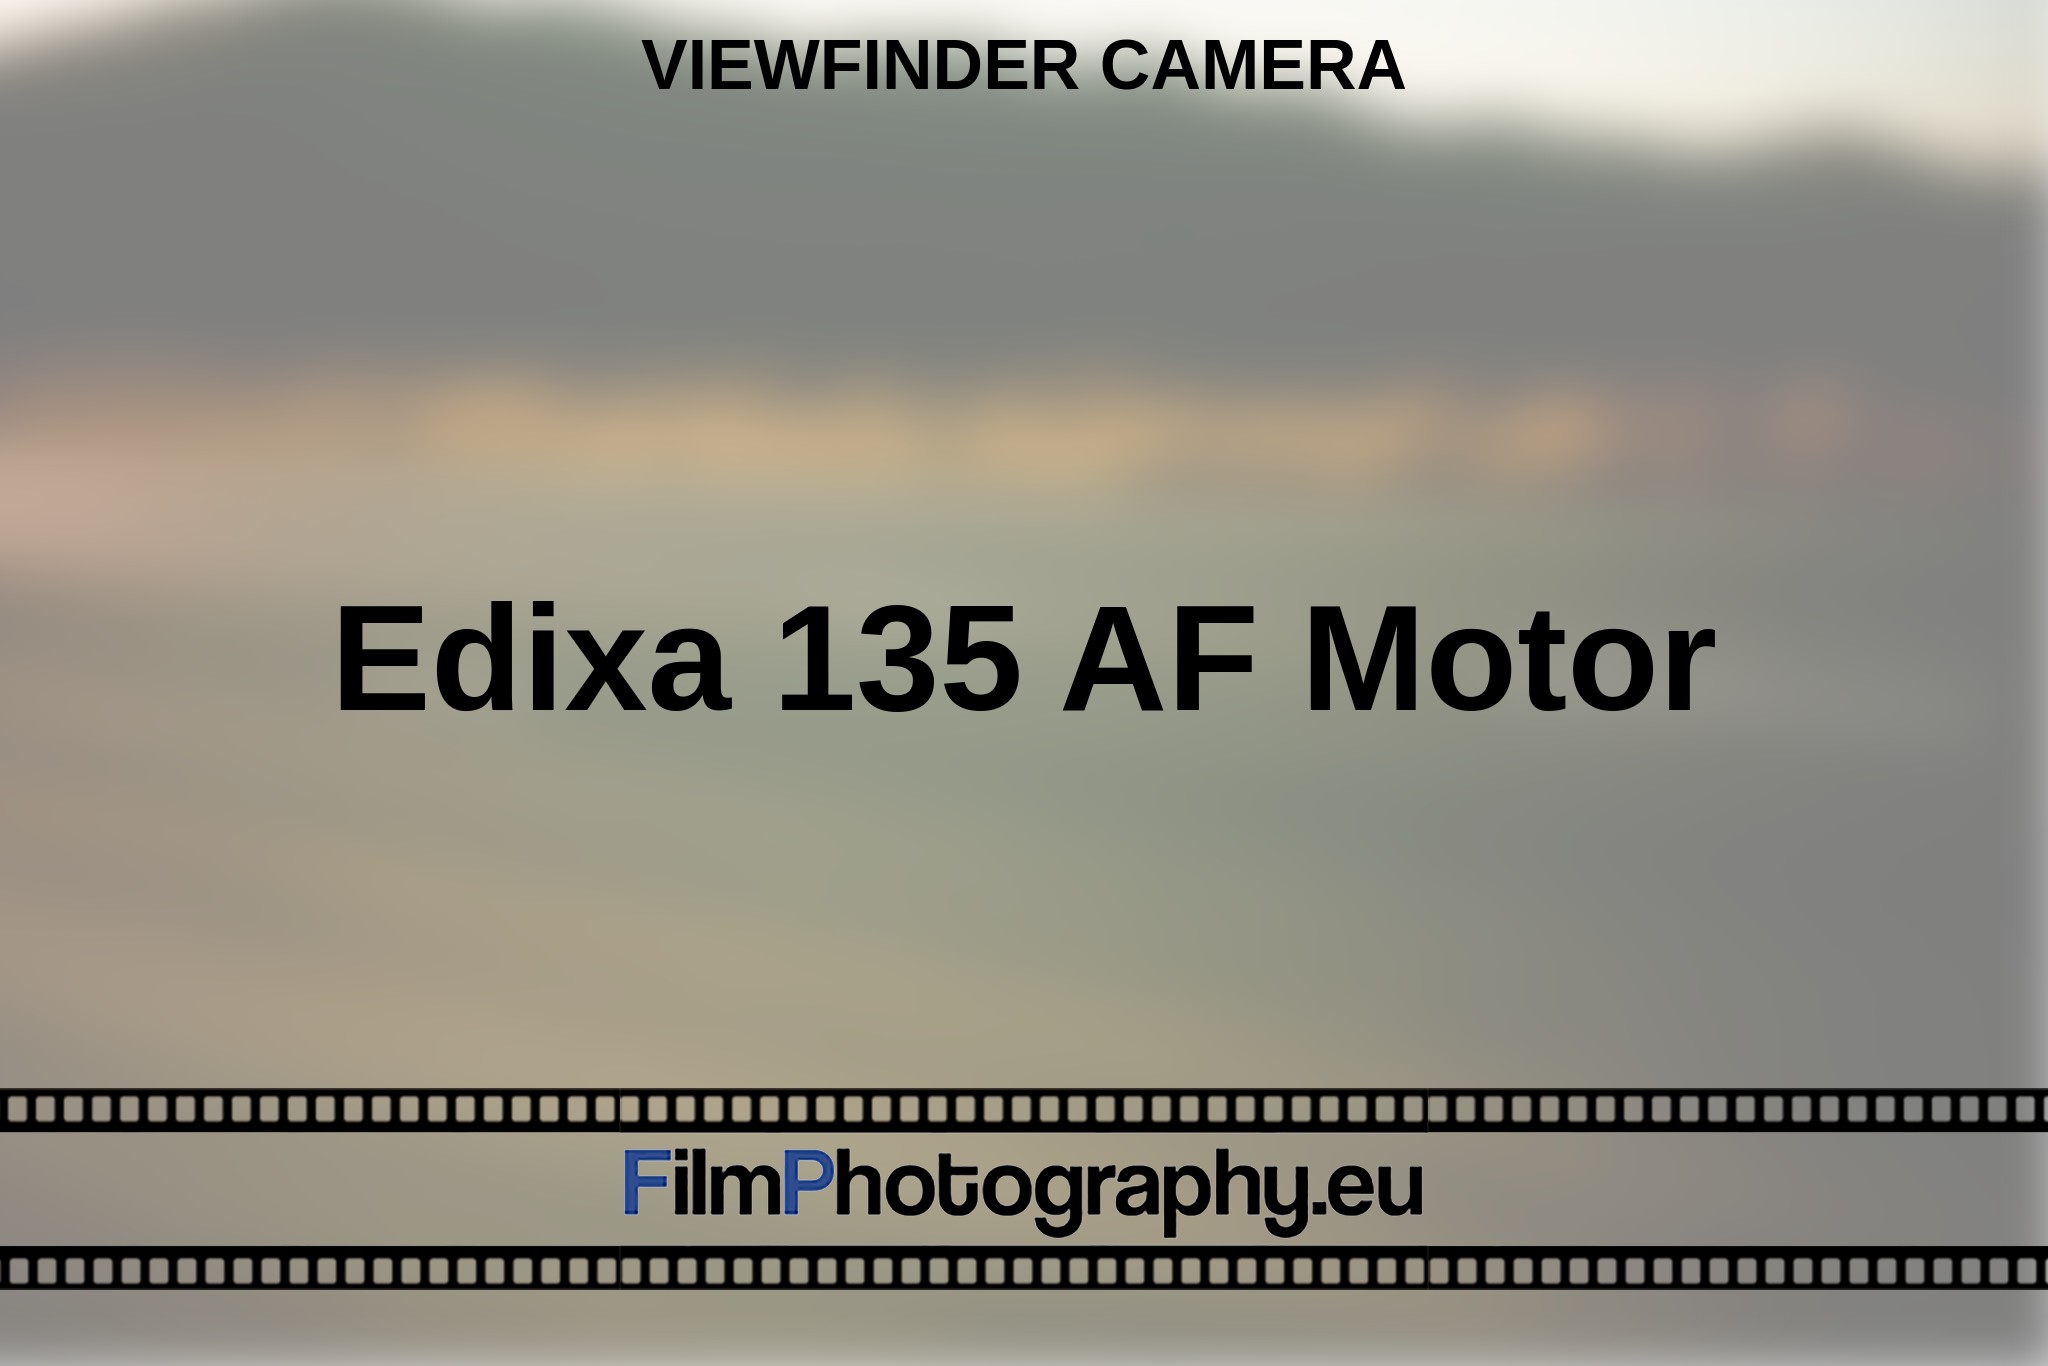 edixa-135-af-motor-viewfinder-camera-en-bnv.jpg